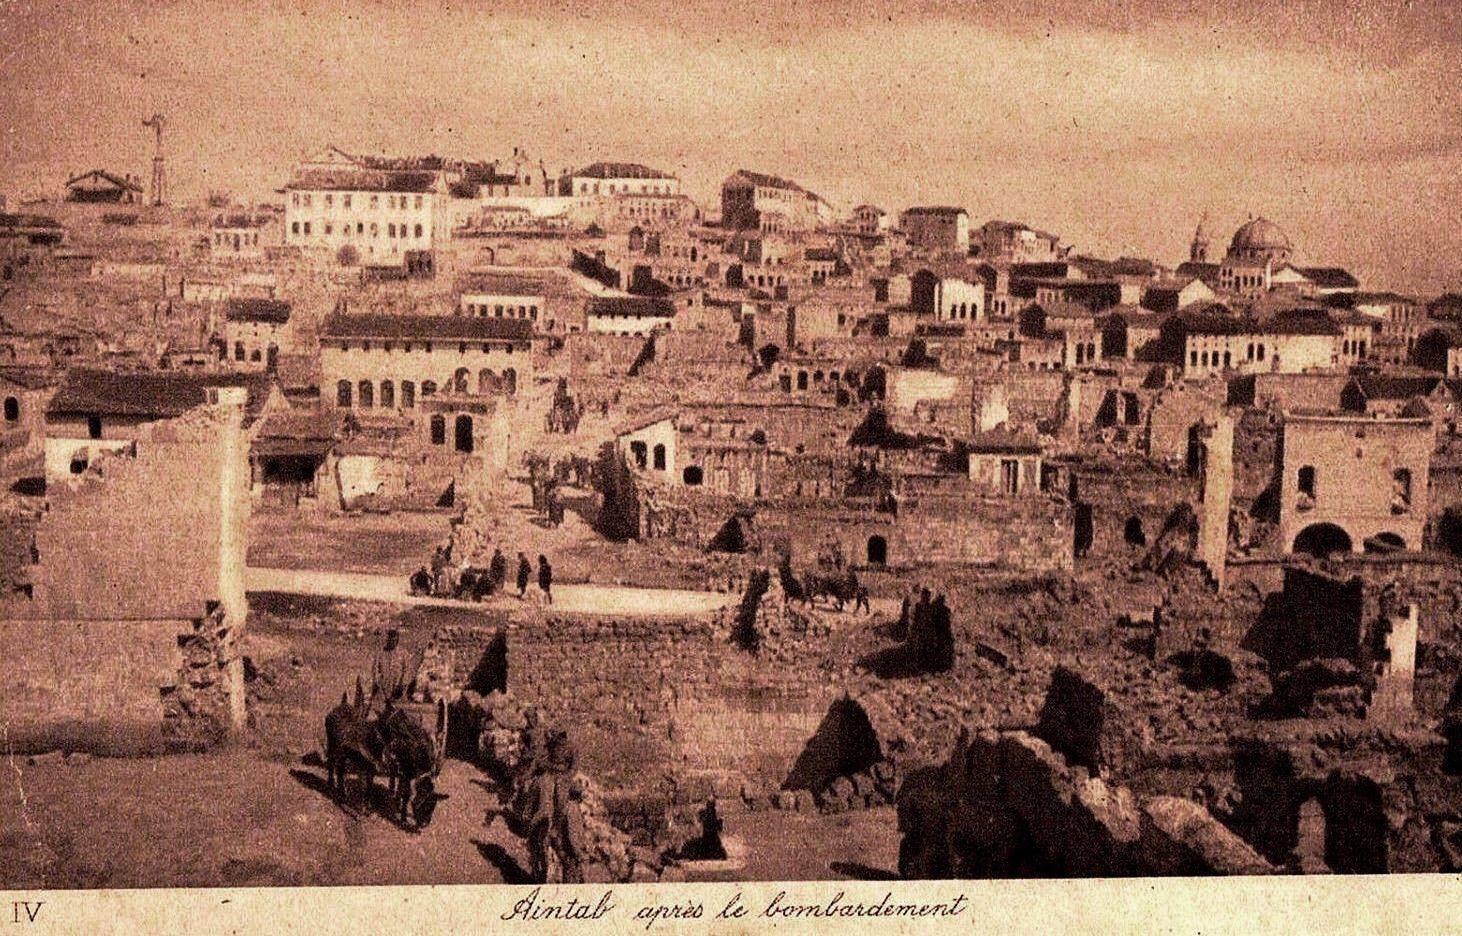 Fransızlarla birlikte Mondros’tan sonra peyderpey şehre dönen Ermeniler de şehri terk ettiler. Kuva-yı Milliye milisleri, bu grupların arkasına düştü. 